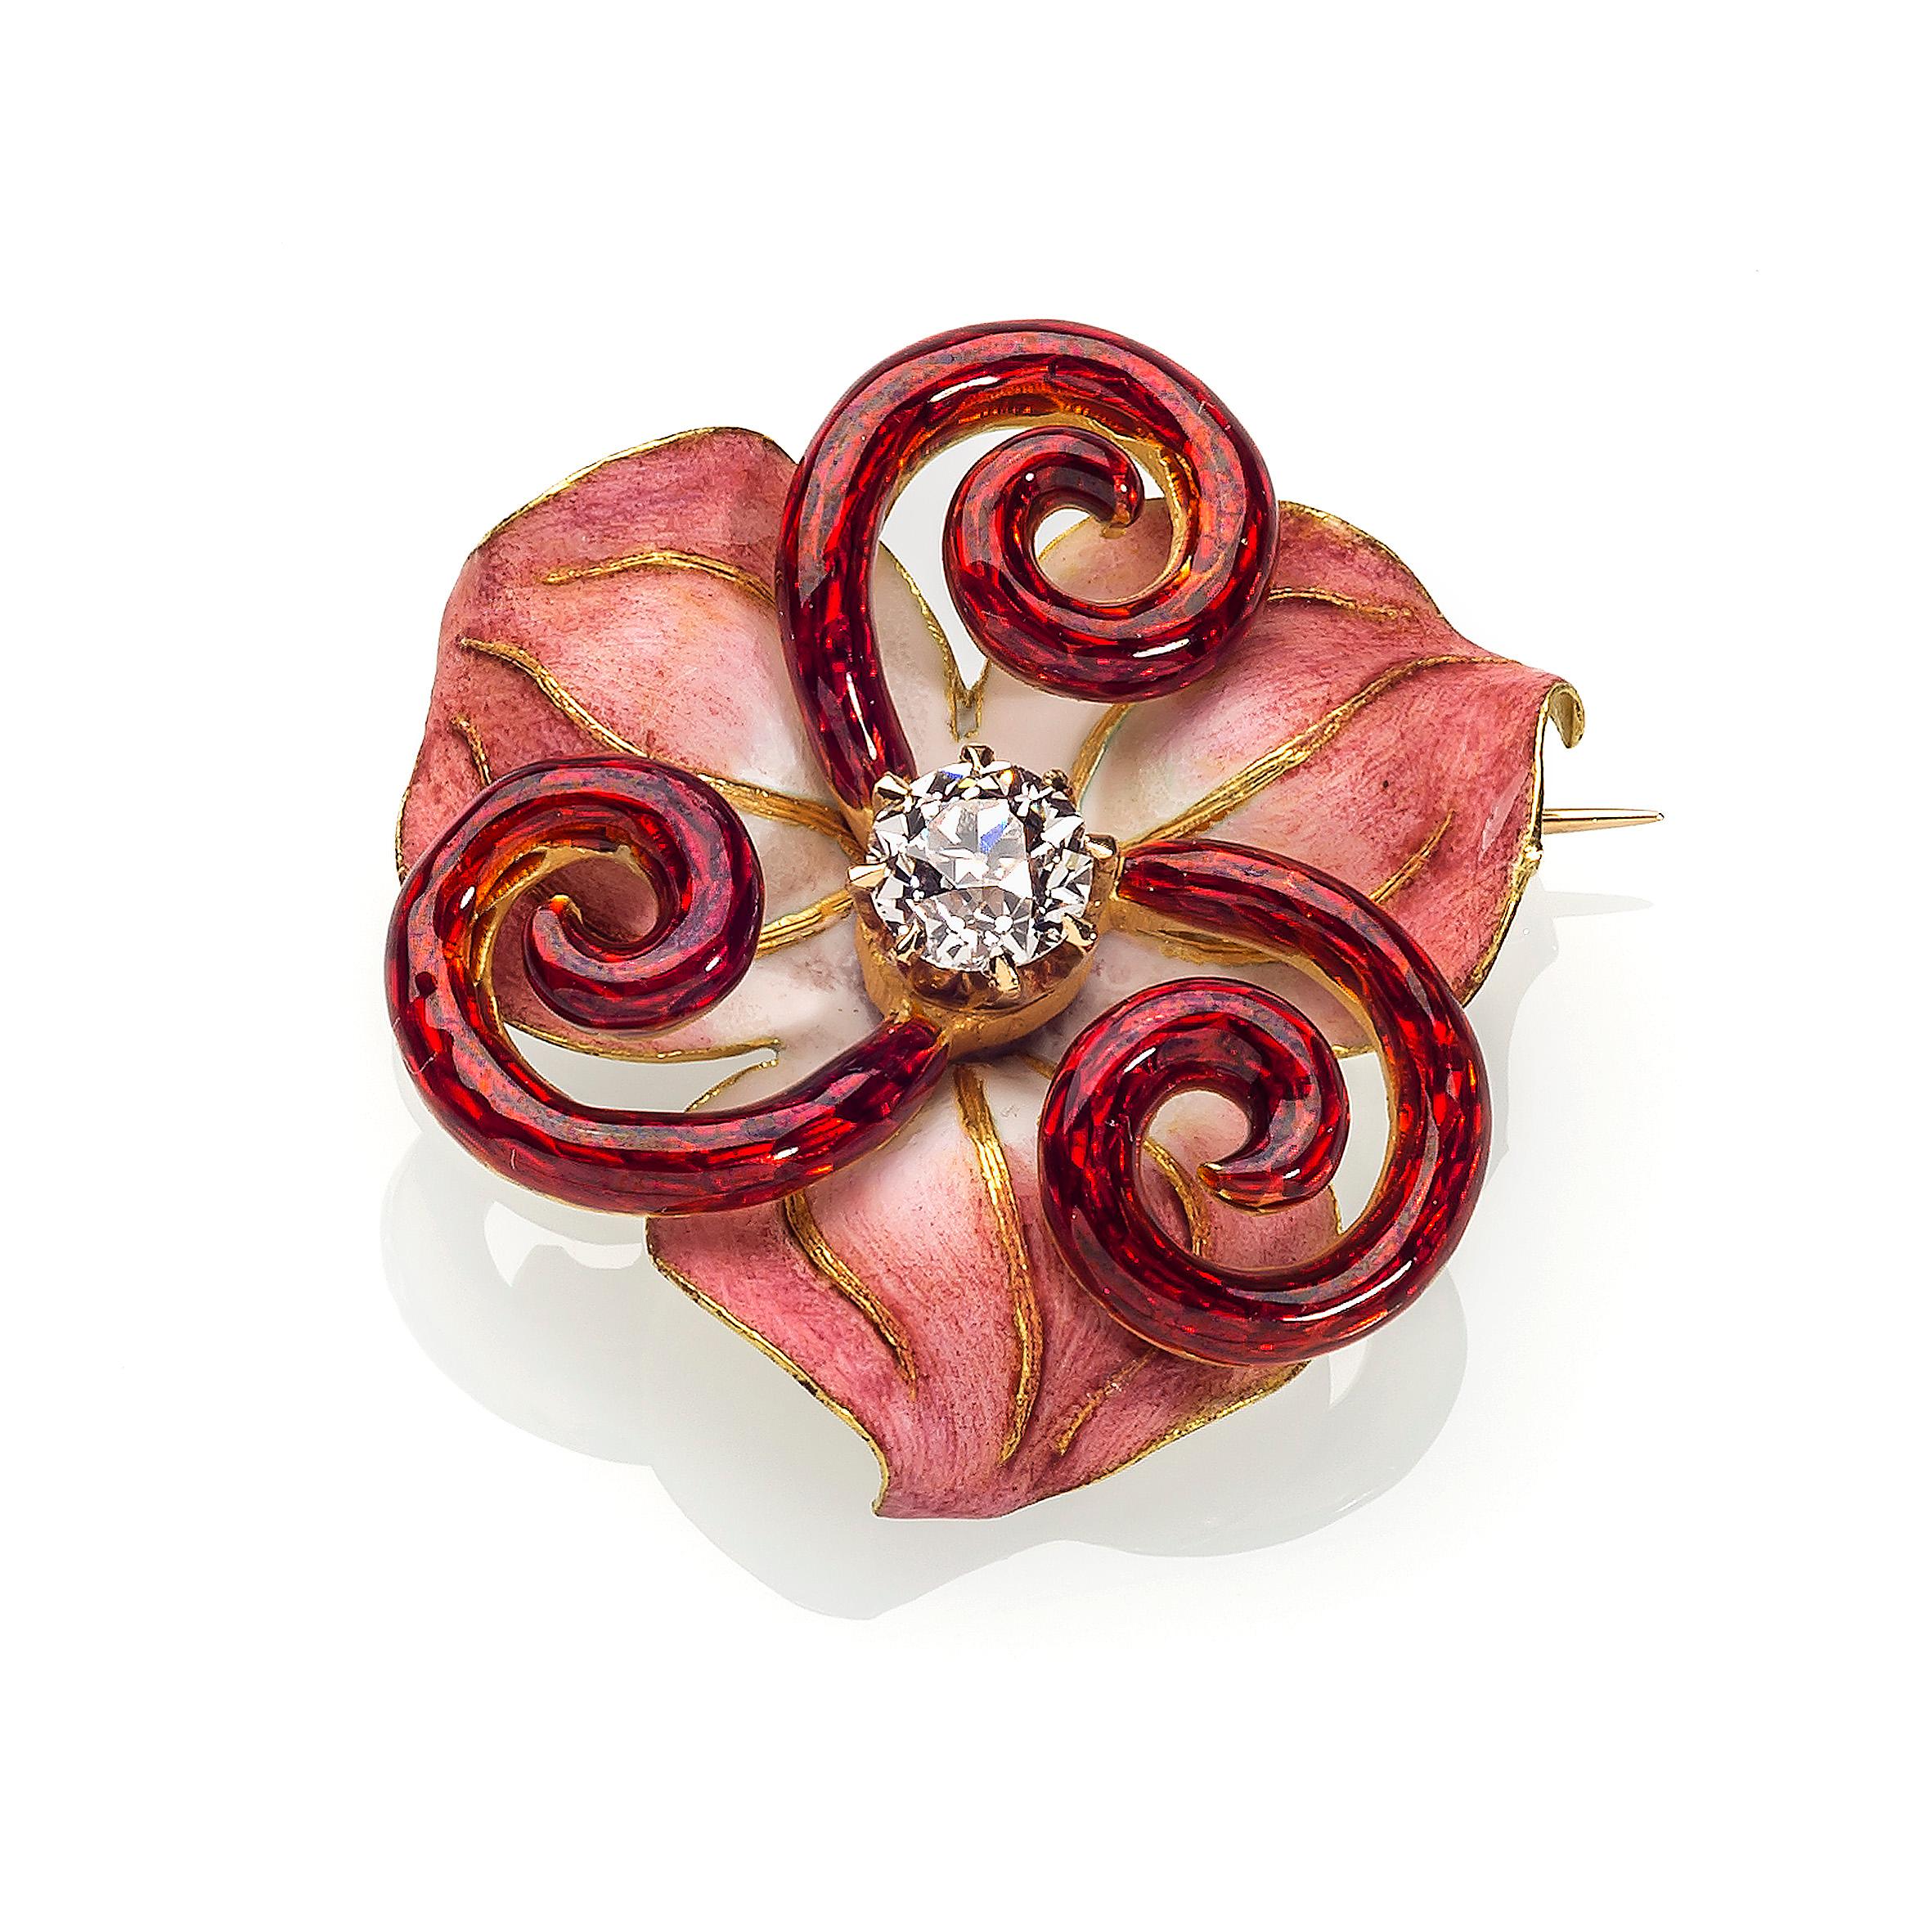 Dieses wunderschöne Jewell in Form einer stilisierten Lilie ist ein schönes Beispiel für die Emaillierkunst des Art Nouveau.
Die Blumenstängel sind aus transluzentem Guilloché-Email gefertigt. Die Blütenblätter sind mit undurchsichtiger Emaille in